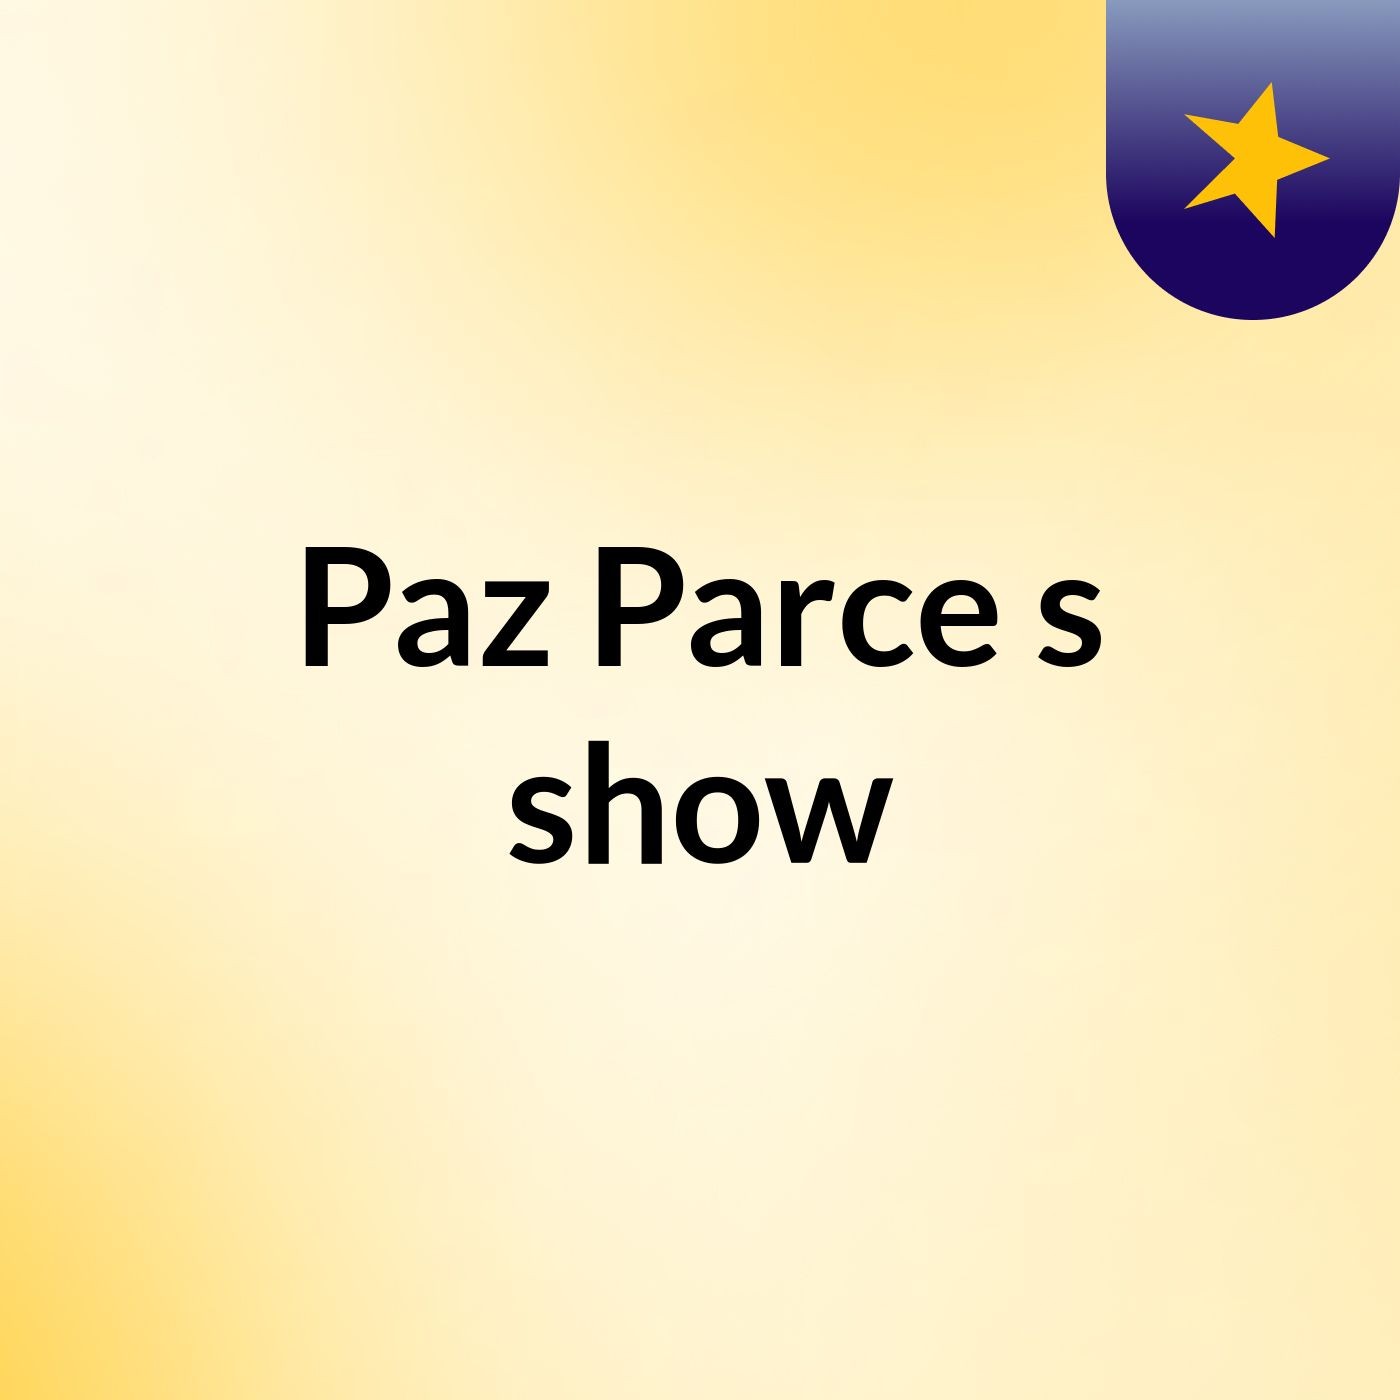 Paz Parce's show